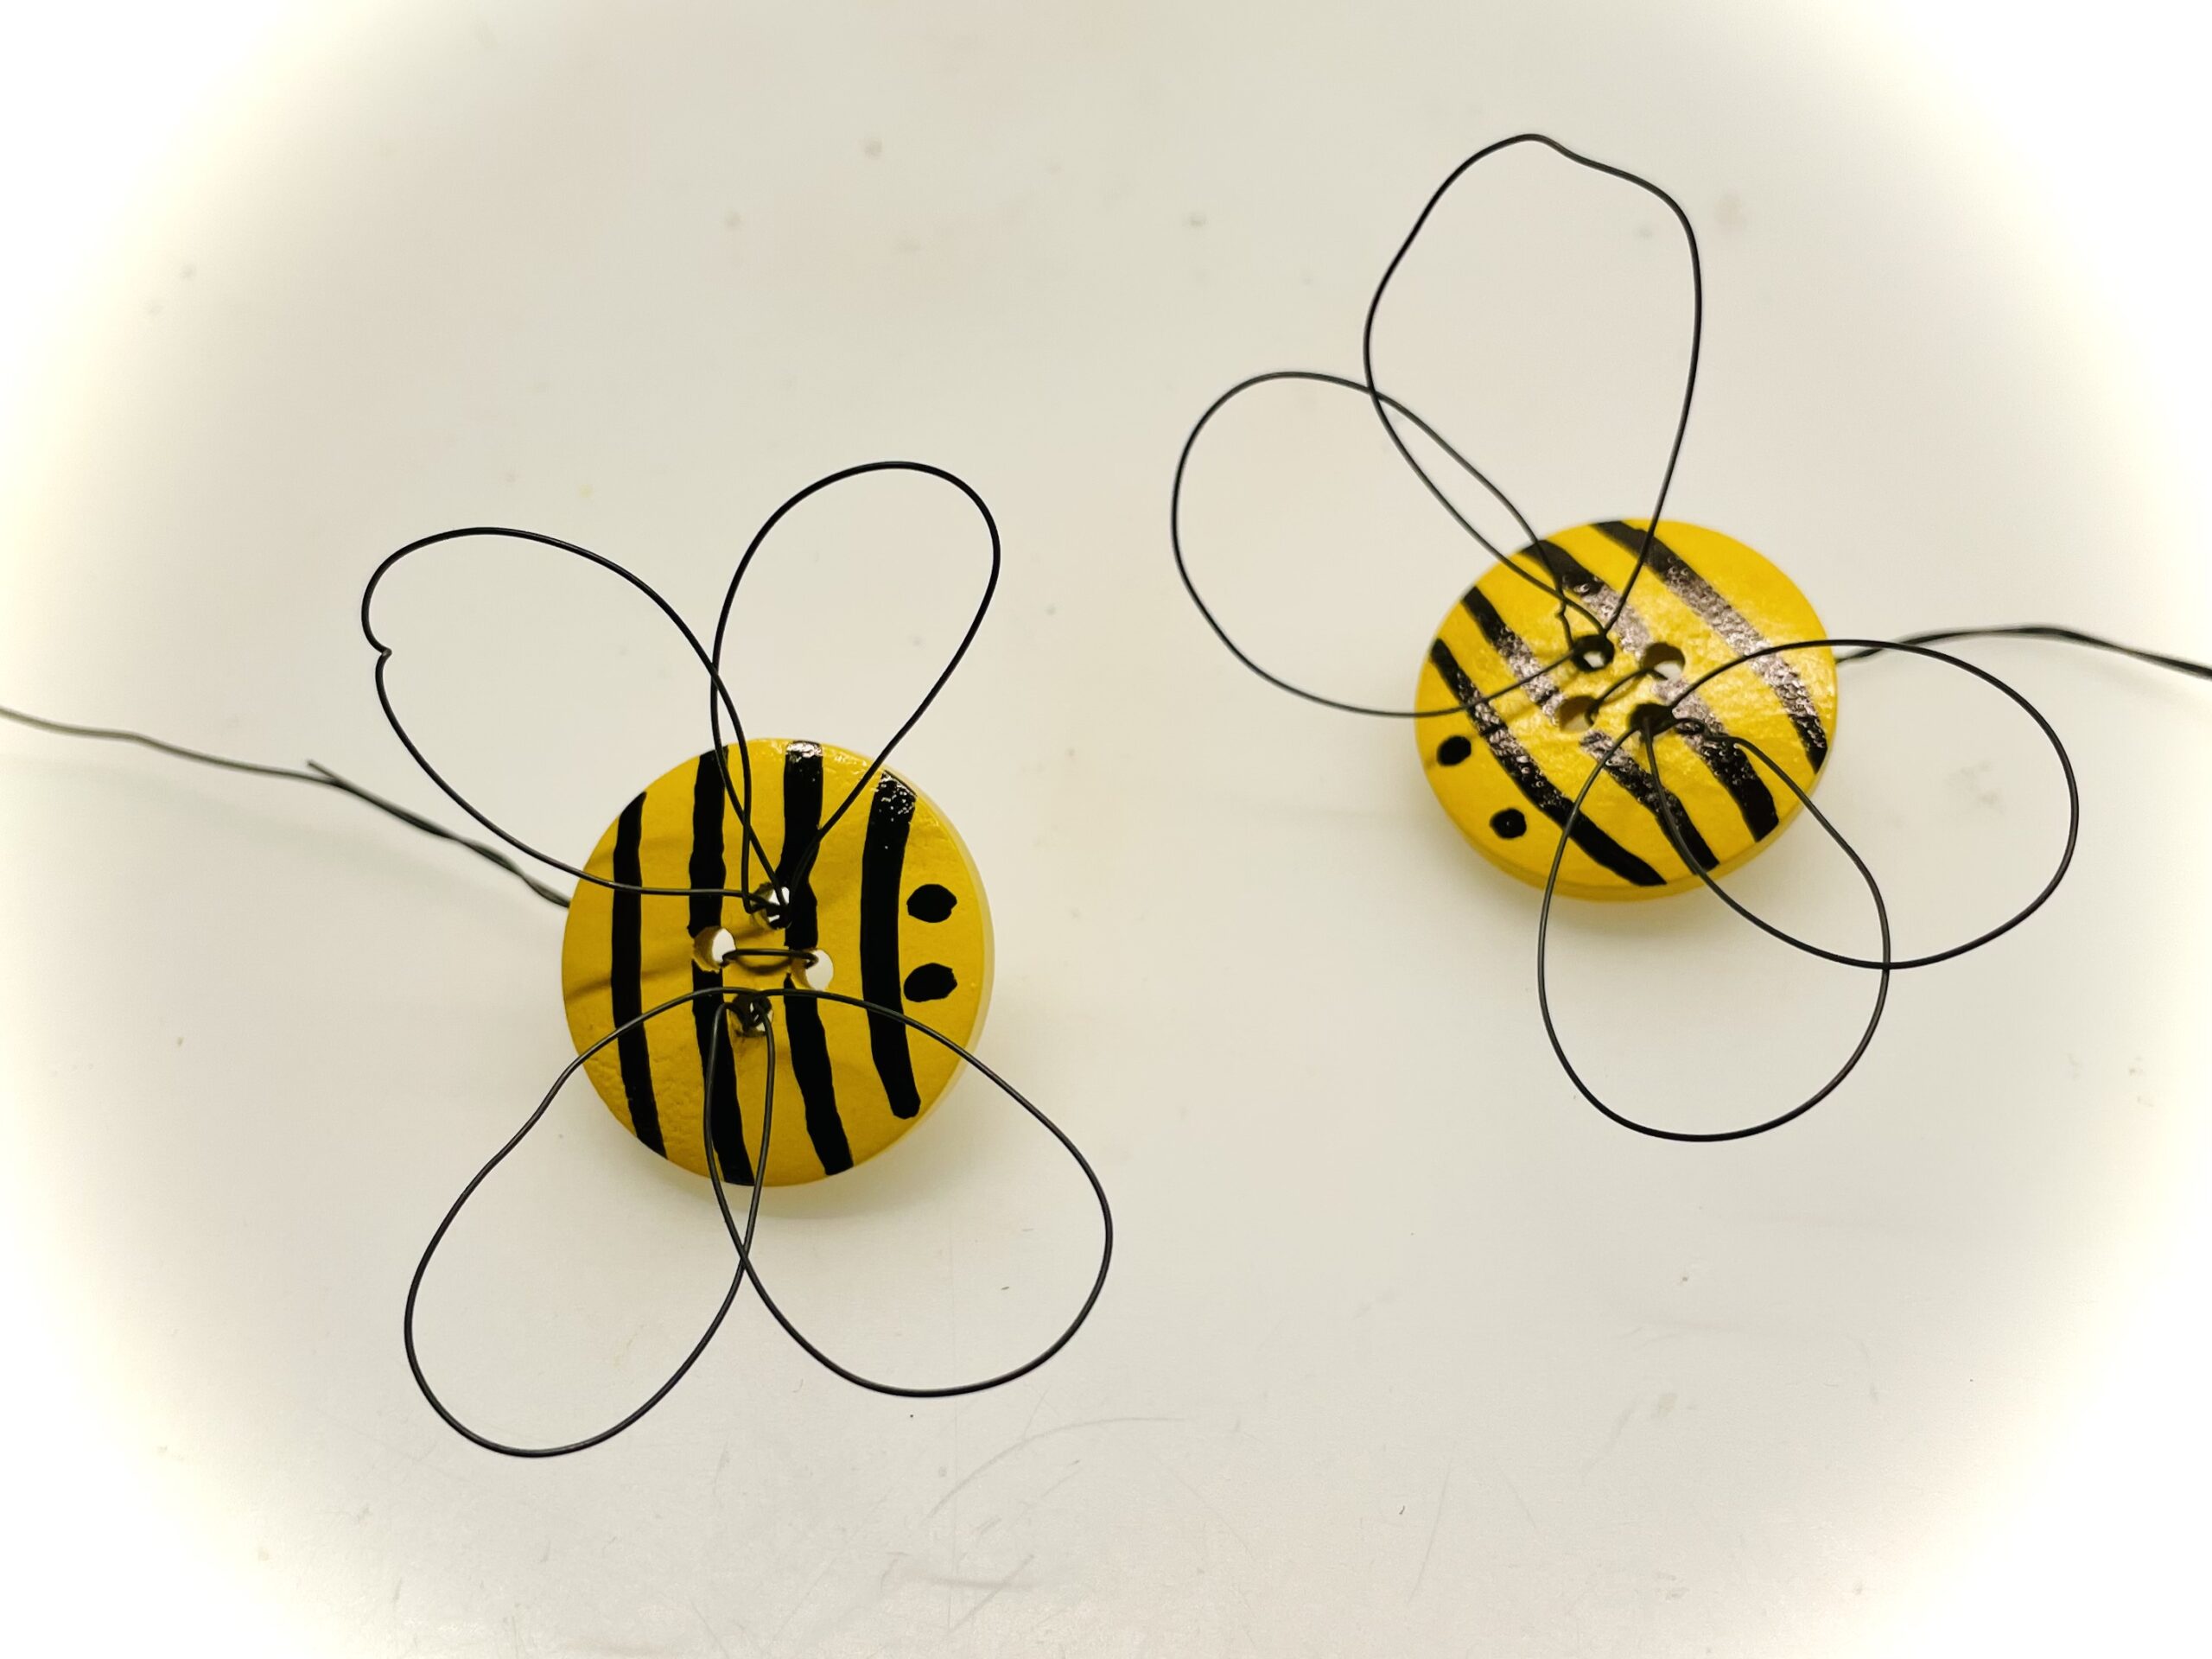 Bild zum Schritt 17 für das Bastel- und DIY-Abenteuer für Kinder: 'Ihr könnt die Biene z.B. als Geschenk verwenden.'